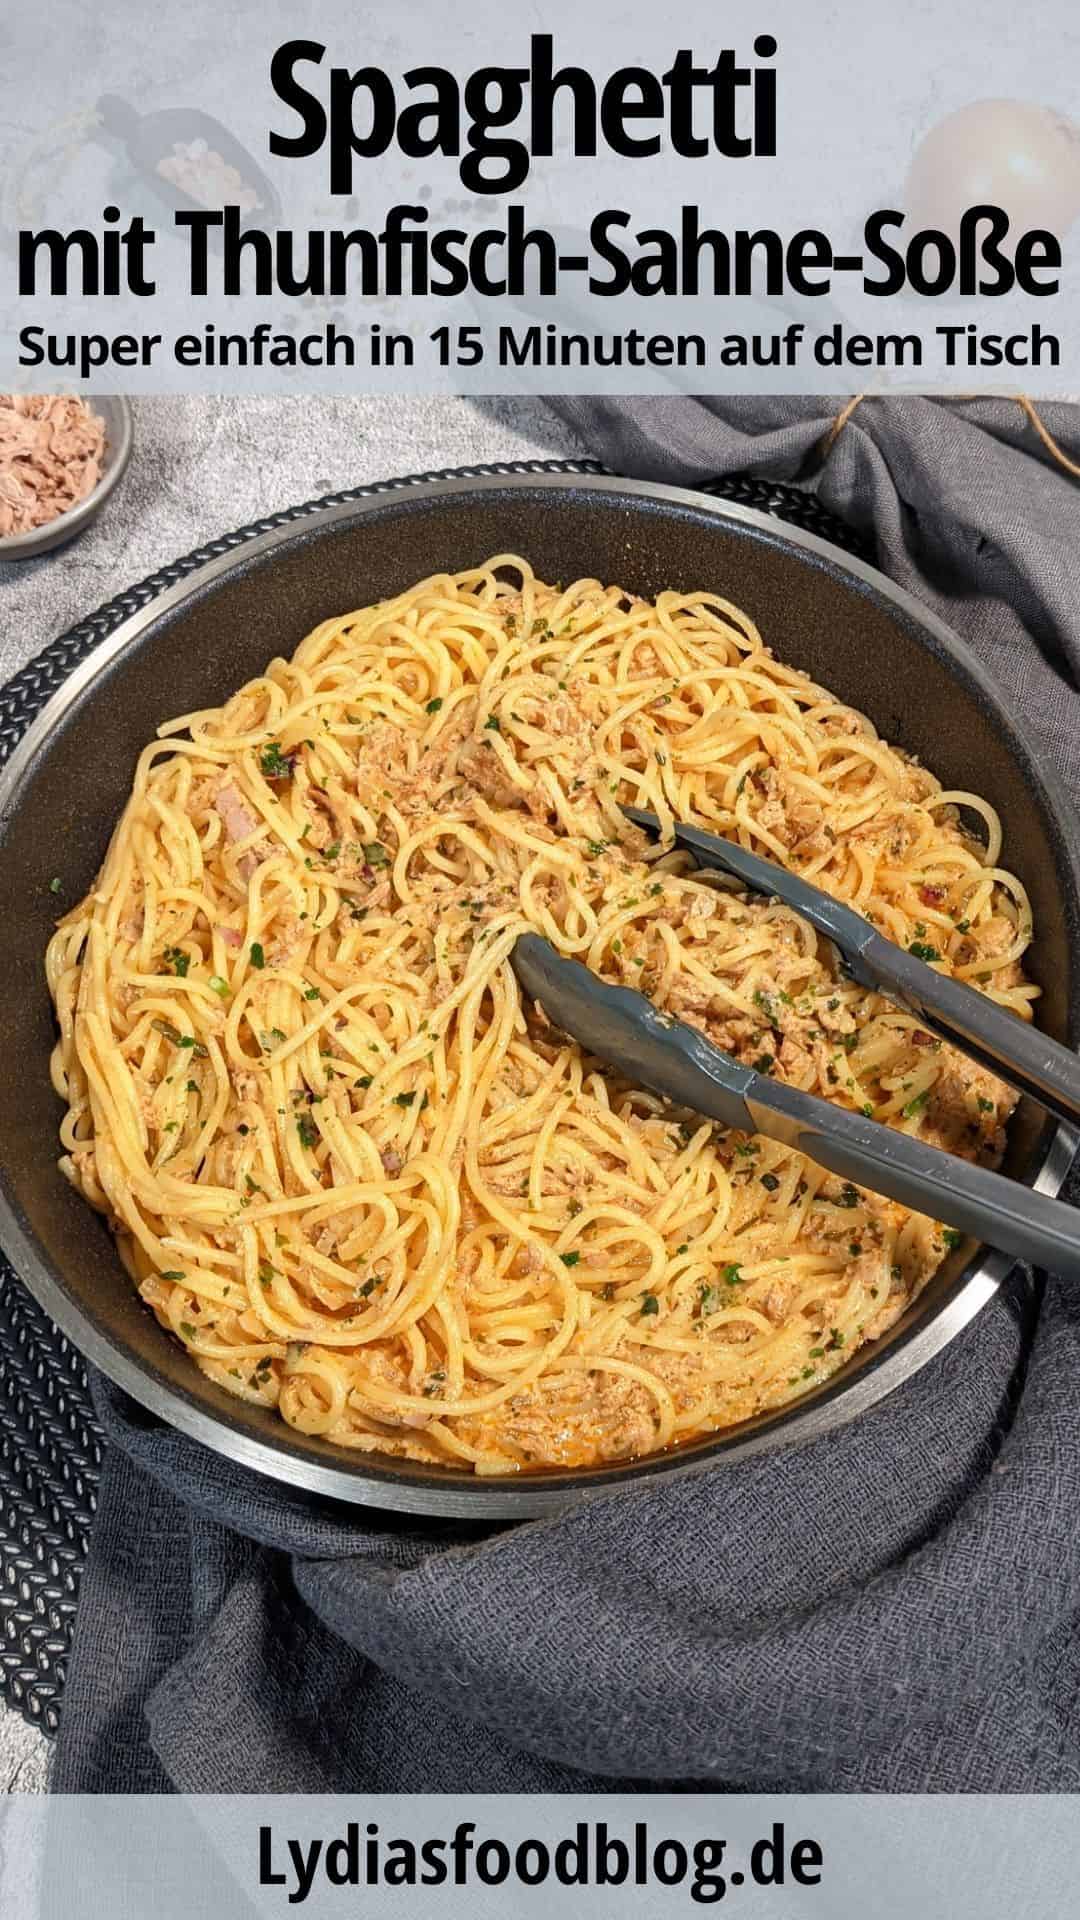 Pin zu Spaghetti mit Thunfisch-Sahne-Soße. 